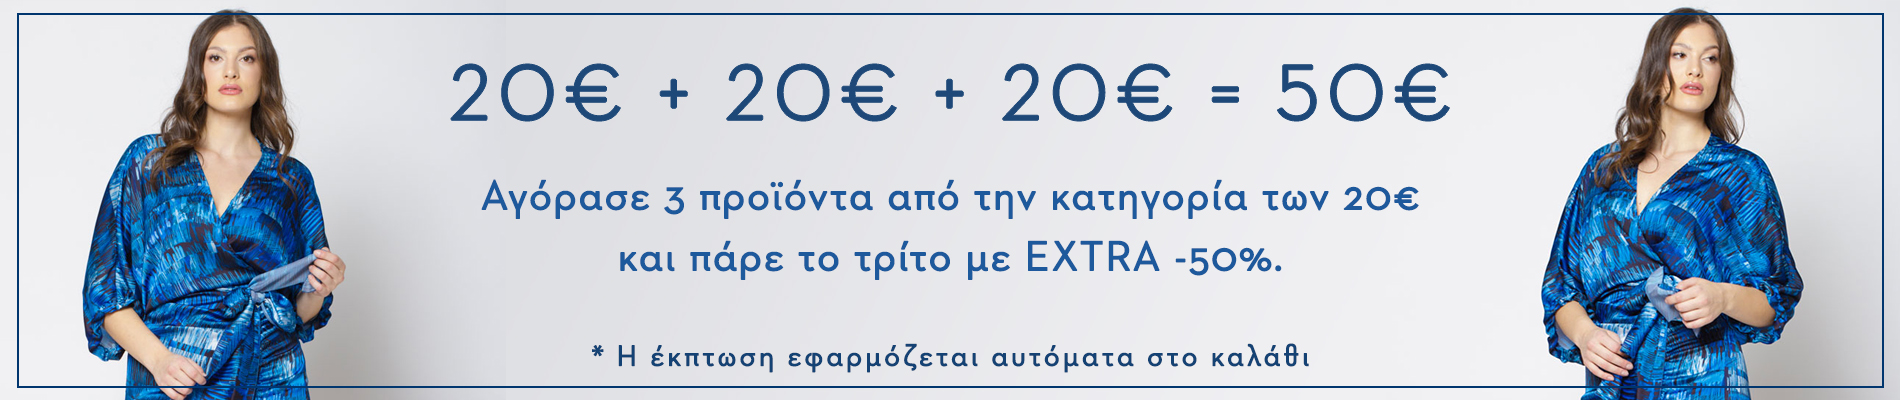 20€+20€+20€=50€